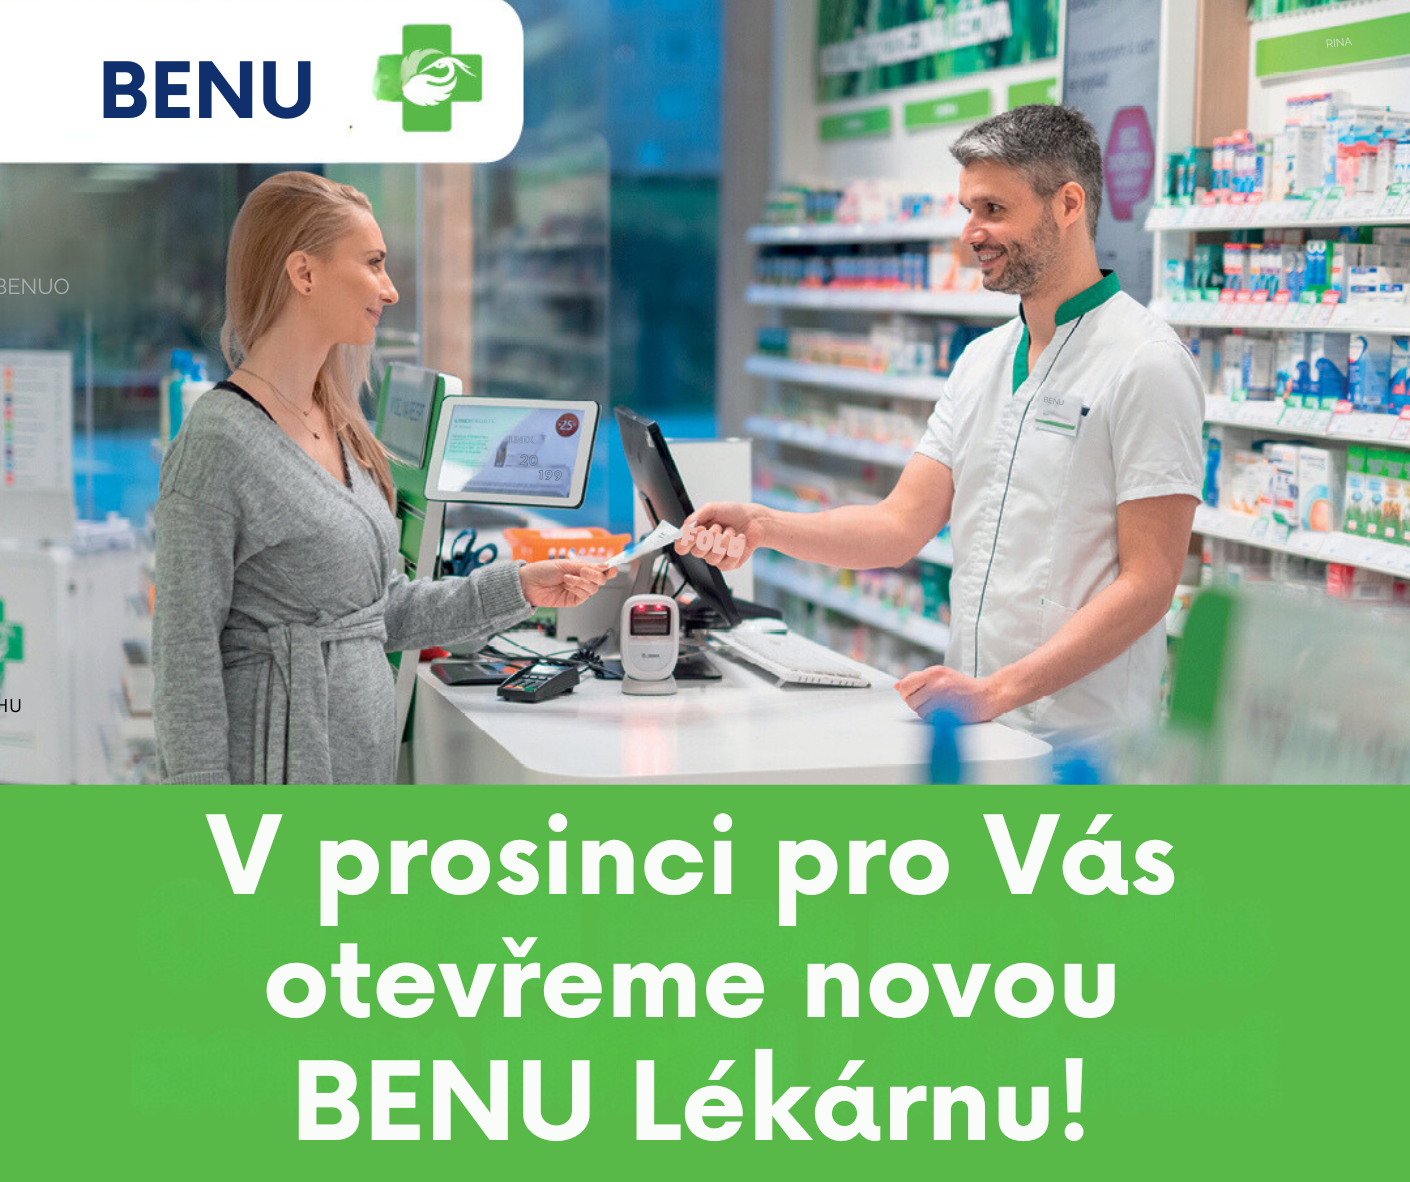 V prosinci bude v našem supermarketu Terno Zlín otevřena nová Benu Lékárna!💊👨‍👩‍👧‍👦